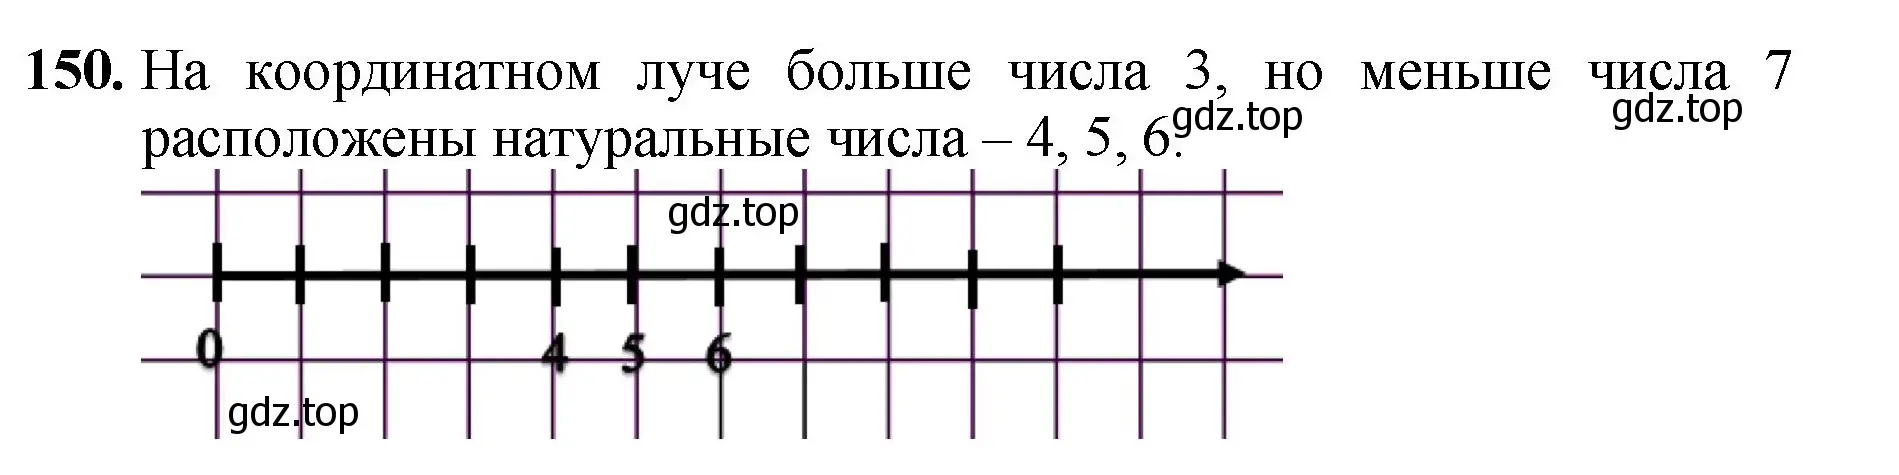 Решение номер 150 (страница 44) гдз по математике 5 класс Мерзляк, Полонский, учебник